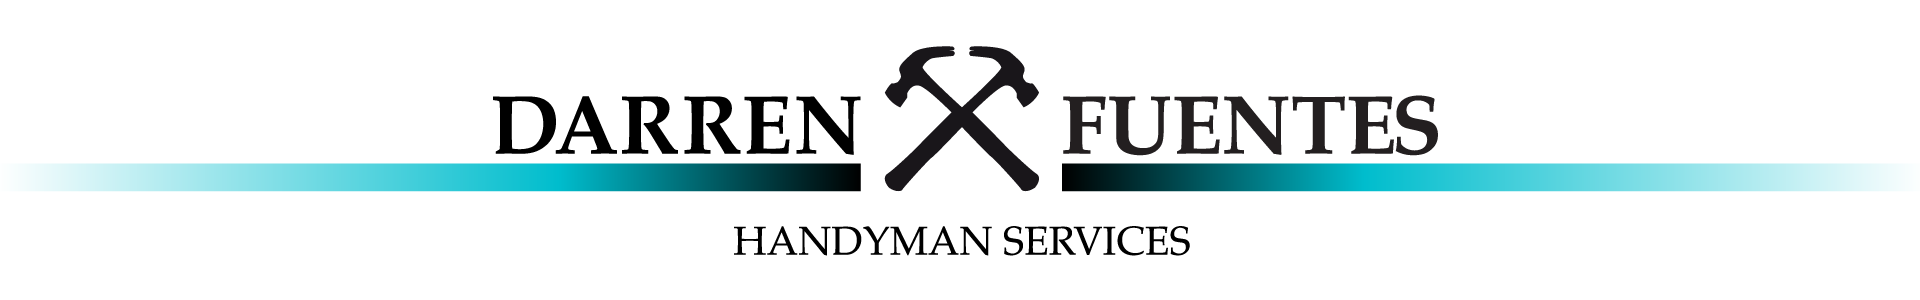 Darren Fuentes handyman Services Logo